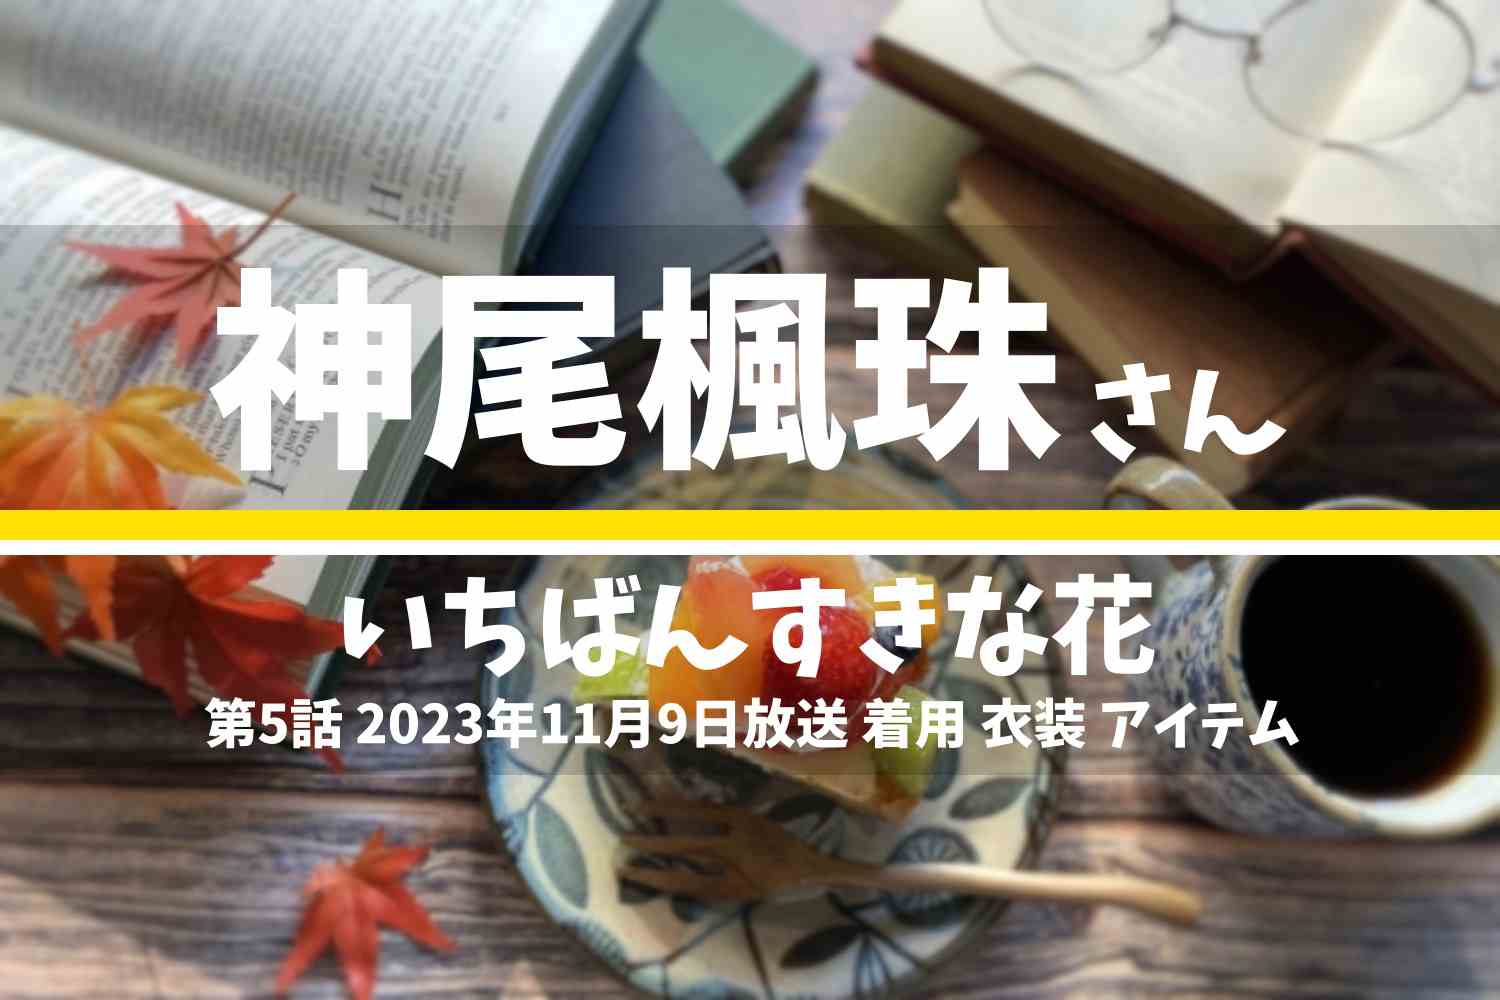 いちばんすきな花 神尾楓珠さん テレビドラマ 衣装 2023年11月9日放送